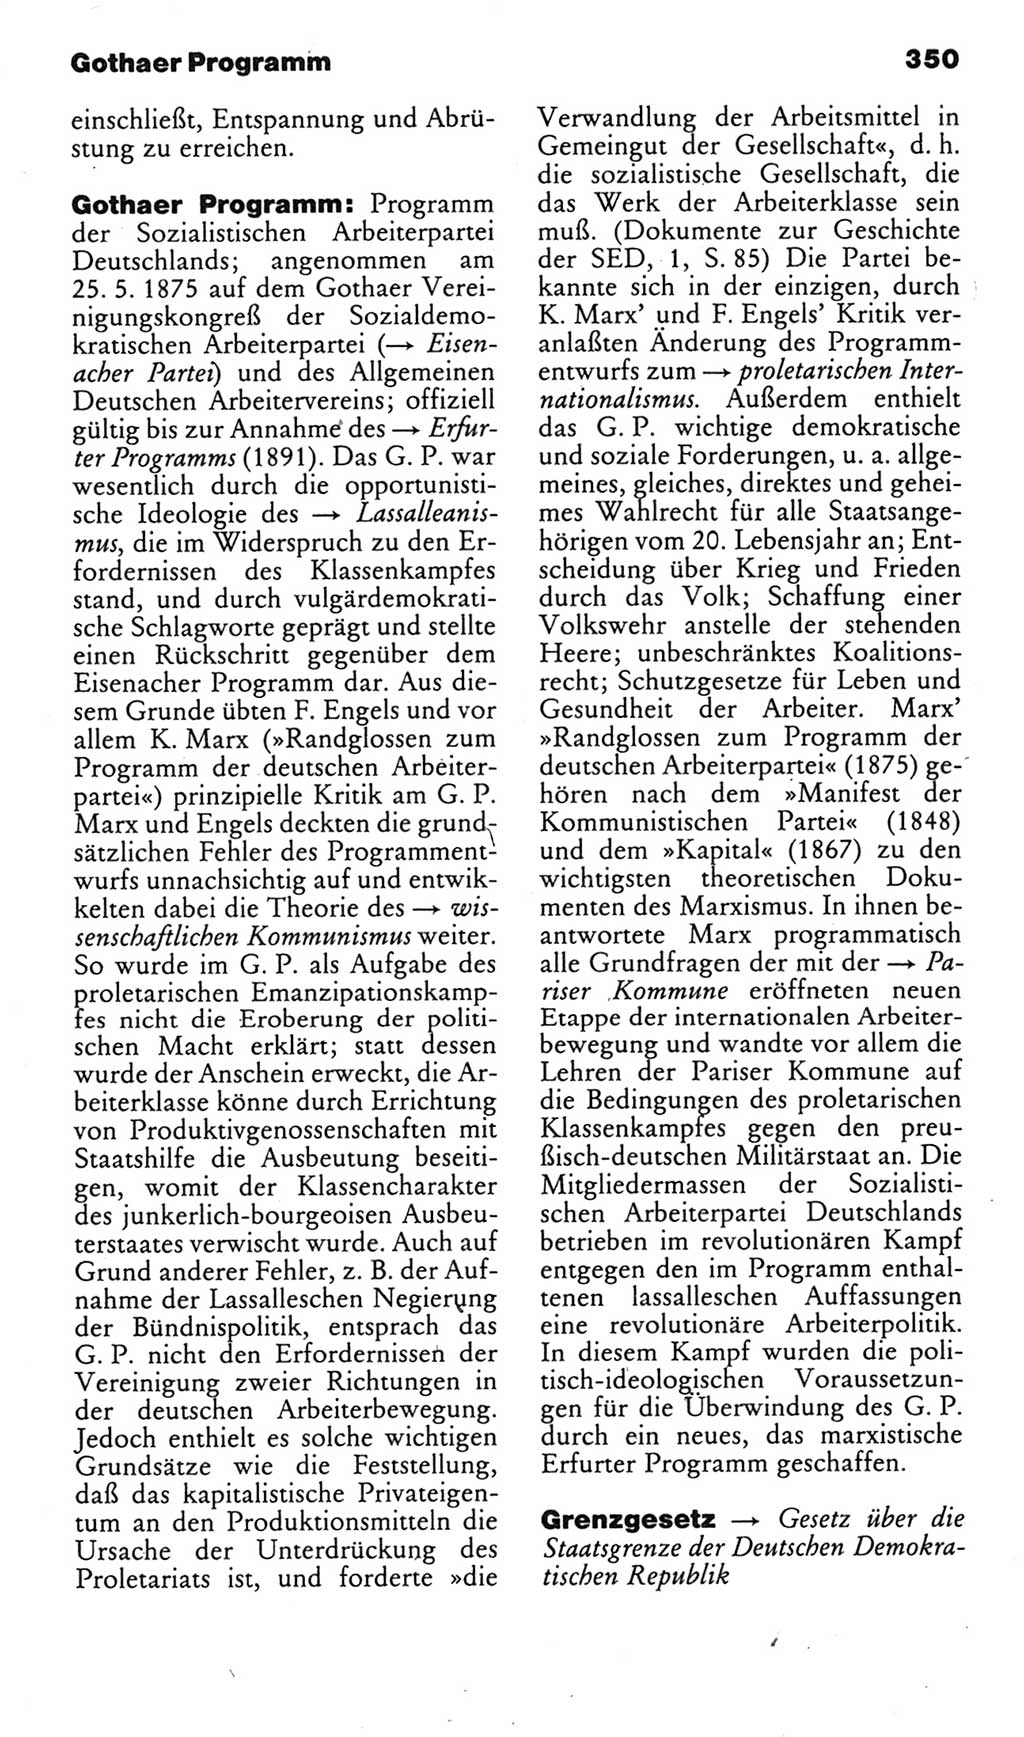 Kleines politisches Wörterbuch [Deutsche Demokratische Republik (DDR)] 1985, Seite 350 (Kl. pol. Wb. DDR 1985, S. 350)